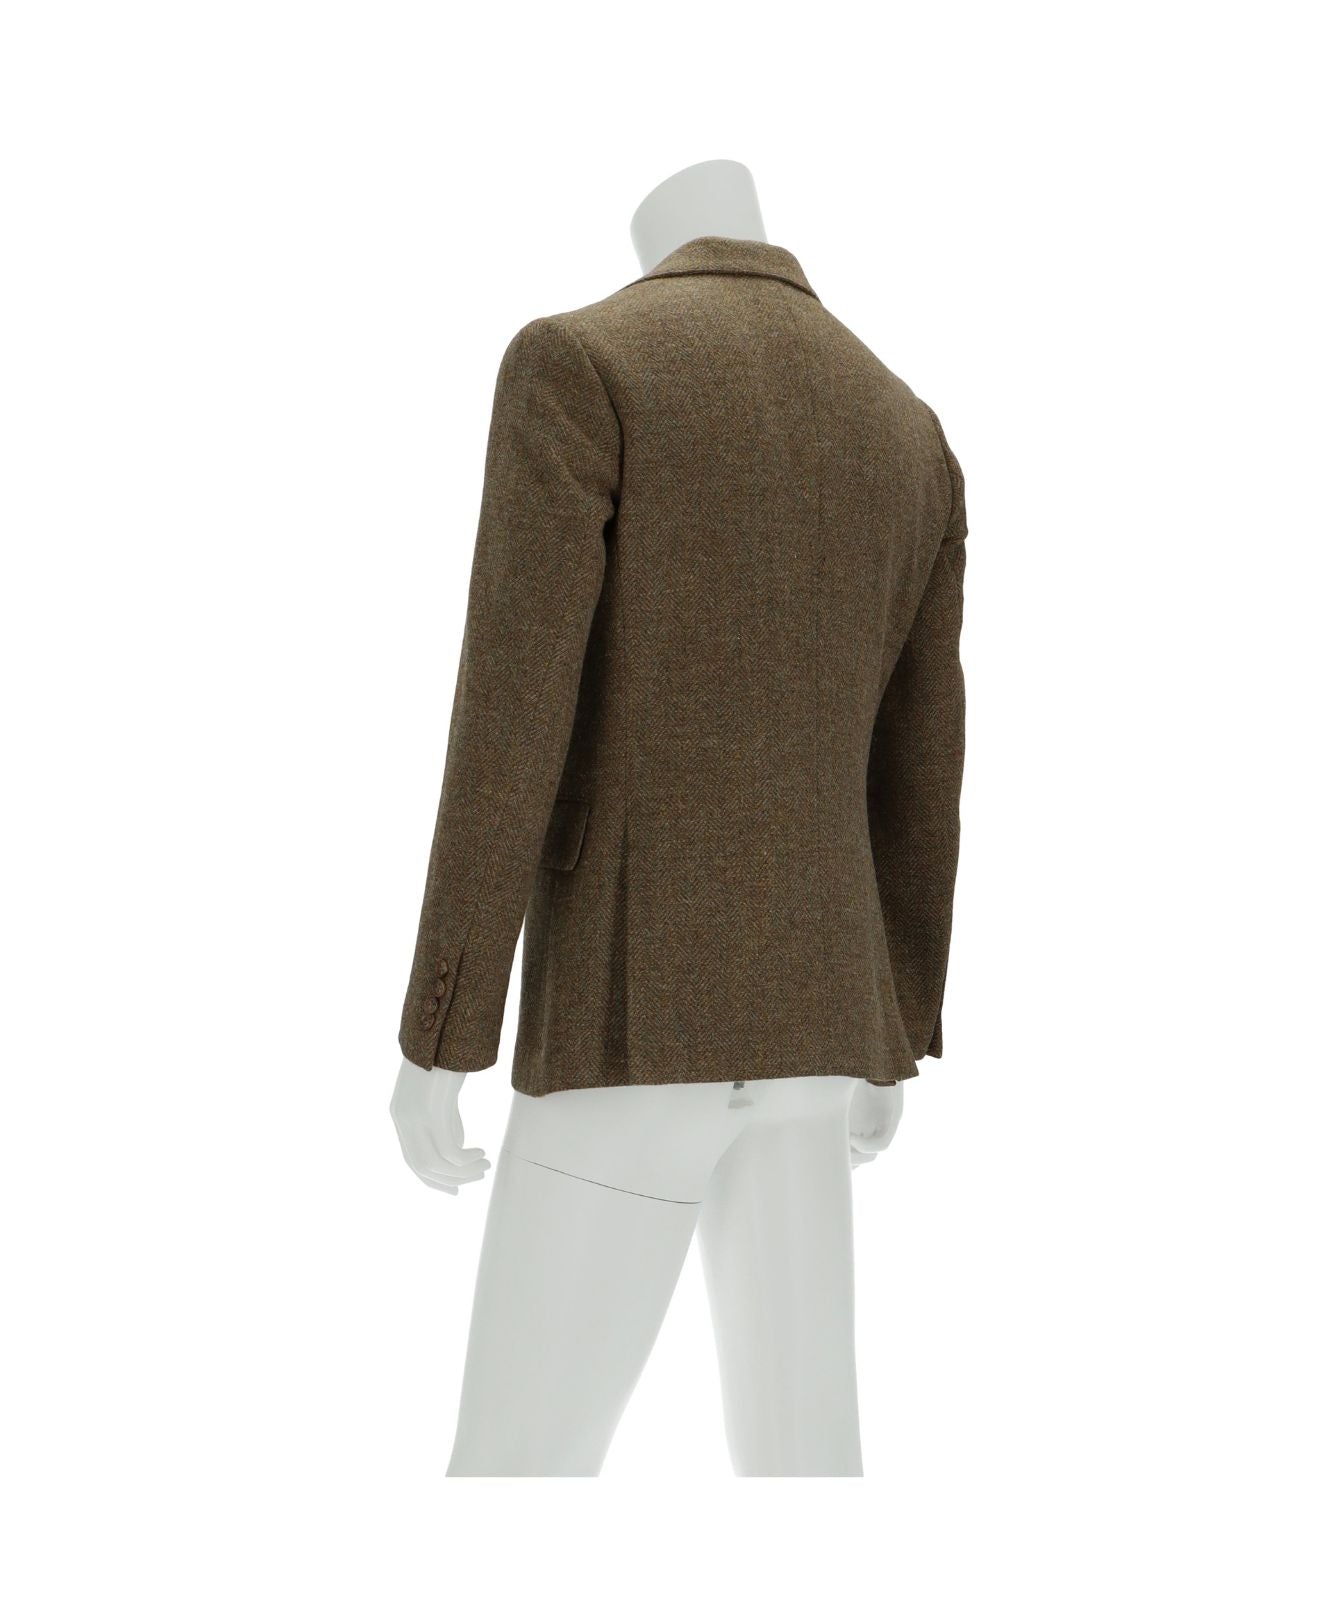 ≪在庫販売≫【Men's】wool herringbone jacket 